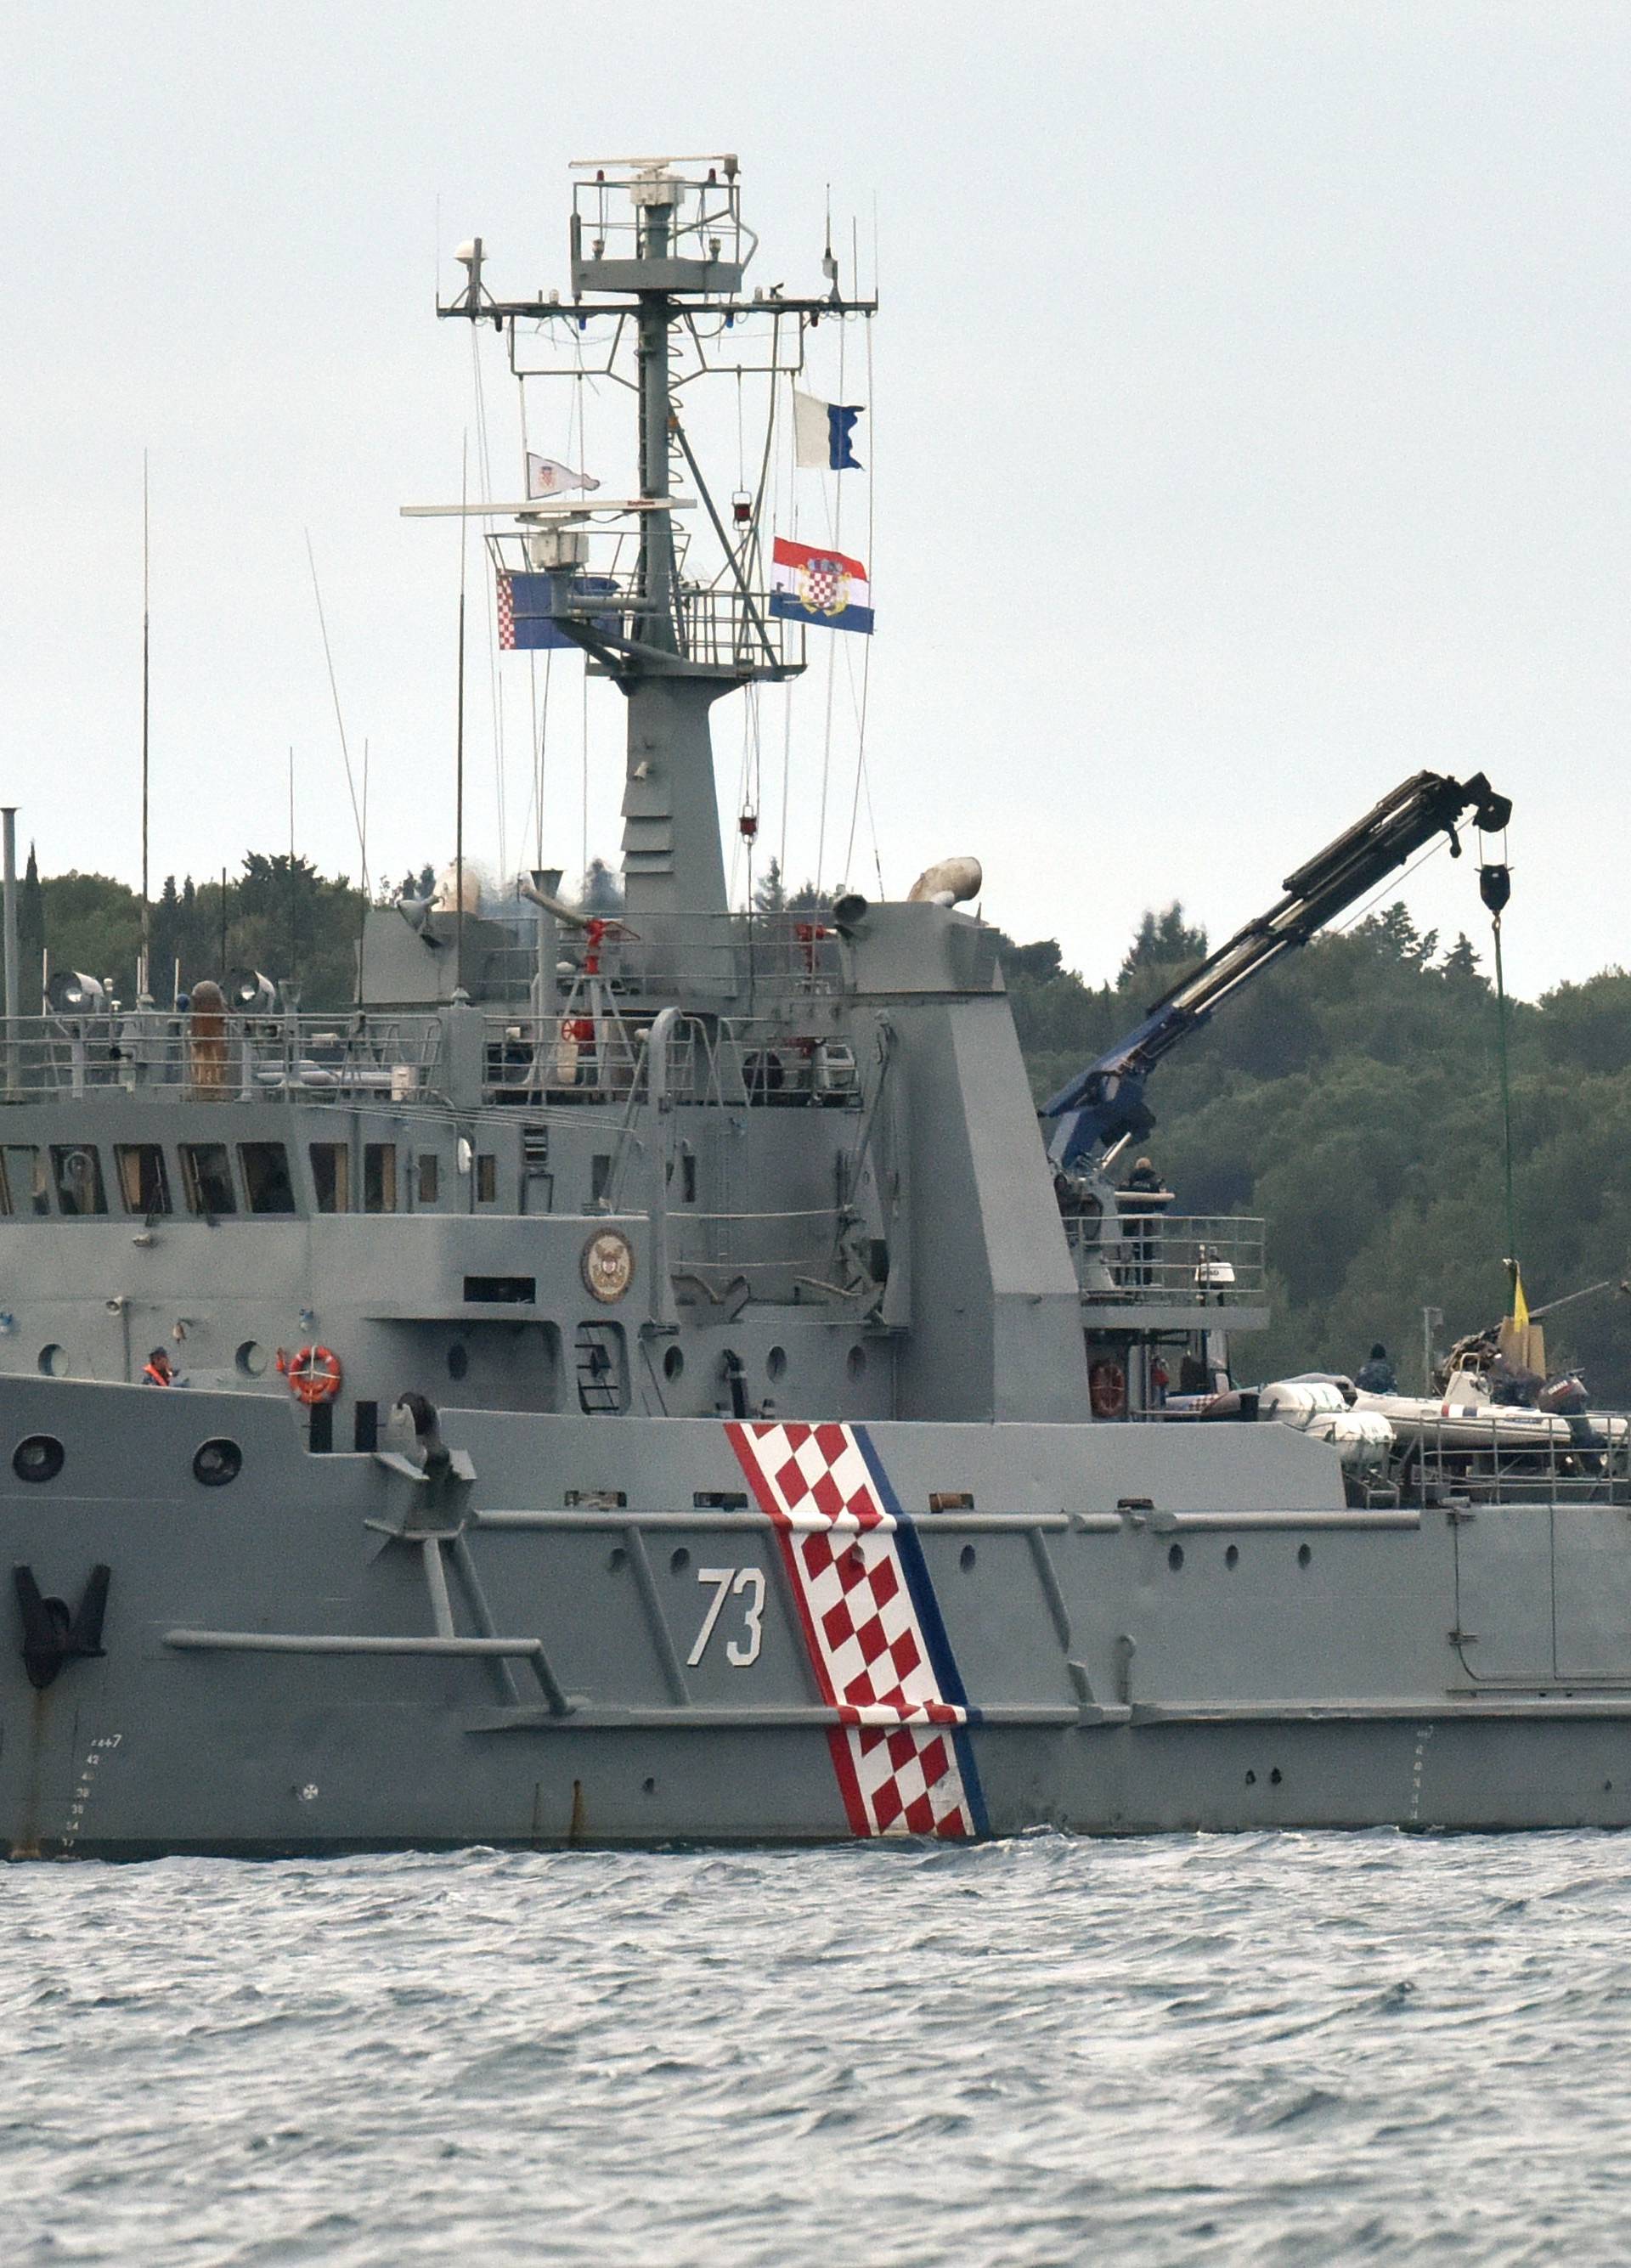 Brod ratne mornarice izvukao je dijelove helikoptera iz mora